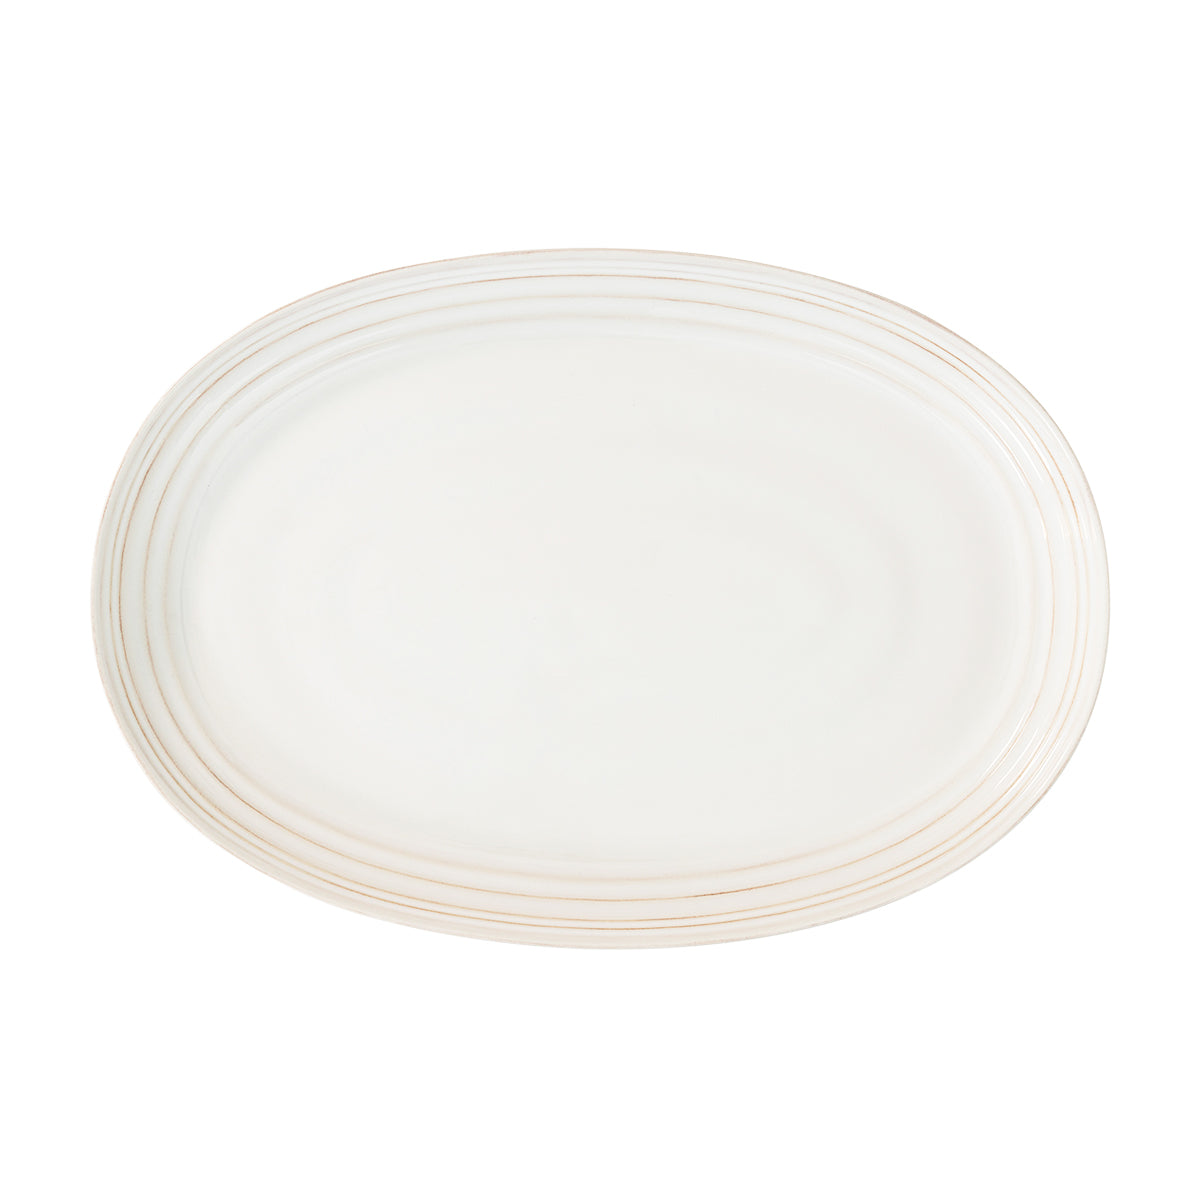 Bilbao Whitewash Platter 17 in